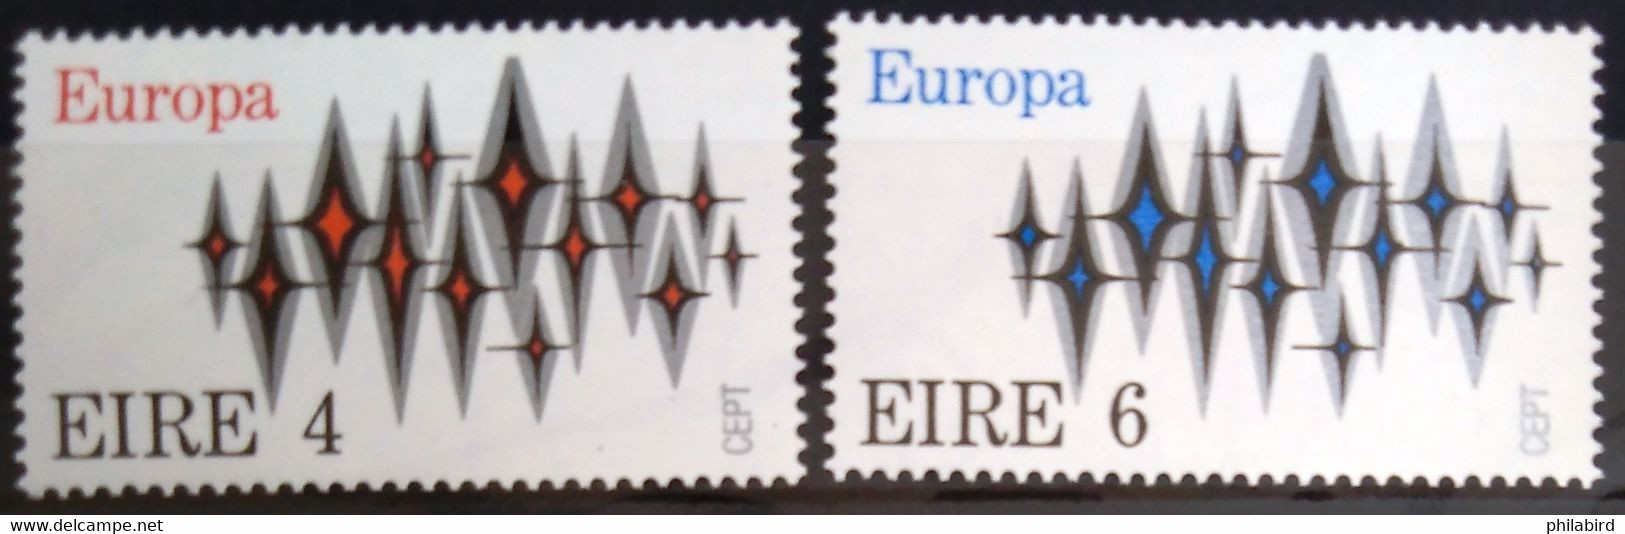 EUROPA 1972 - IRLANDE                    N° 278/279                        NEUF** - 1972